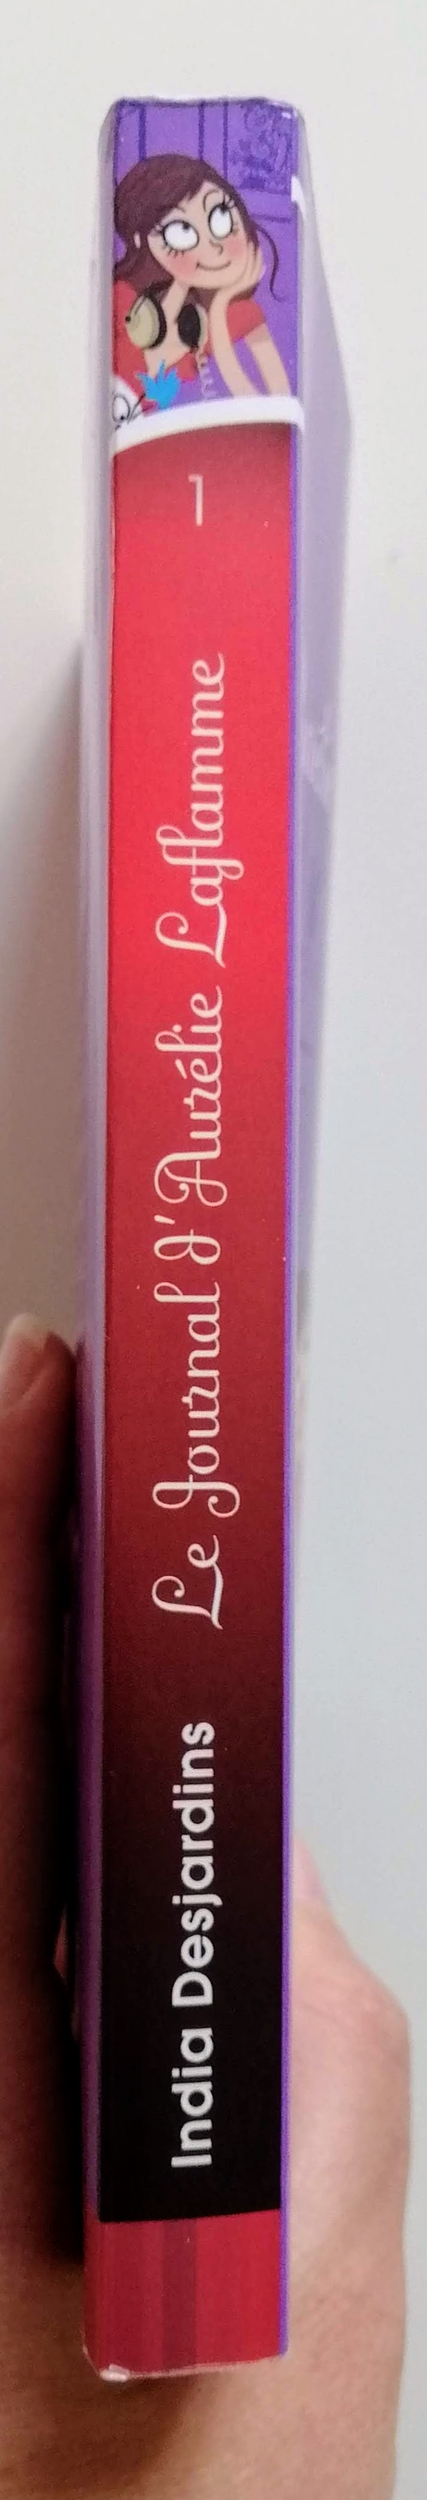 Le journal dAurélie Laflamme - Extraterrestre... ou presque ! - India Desjardins - Livre poche - Little Book Addict - I